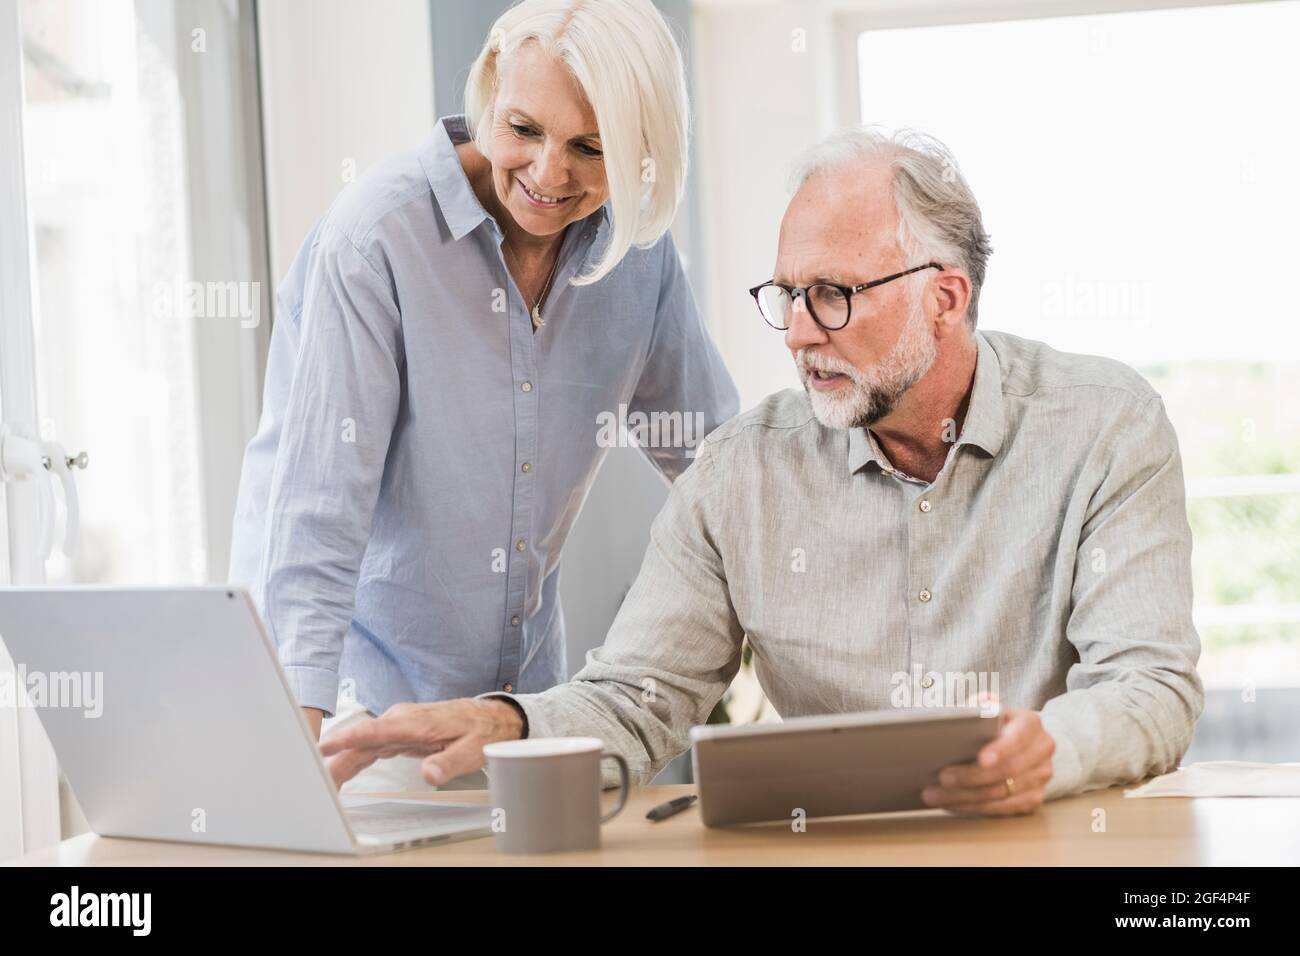 Professionelle und weibliche Mitarbeiter, die drahtlose Technologien nutzen, während sie im Home Office arbeiten Stockfoto